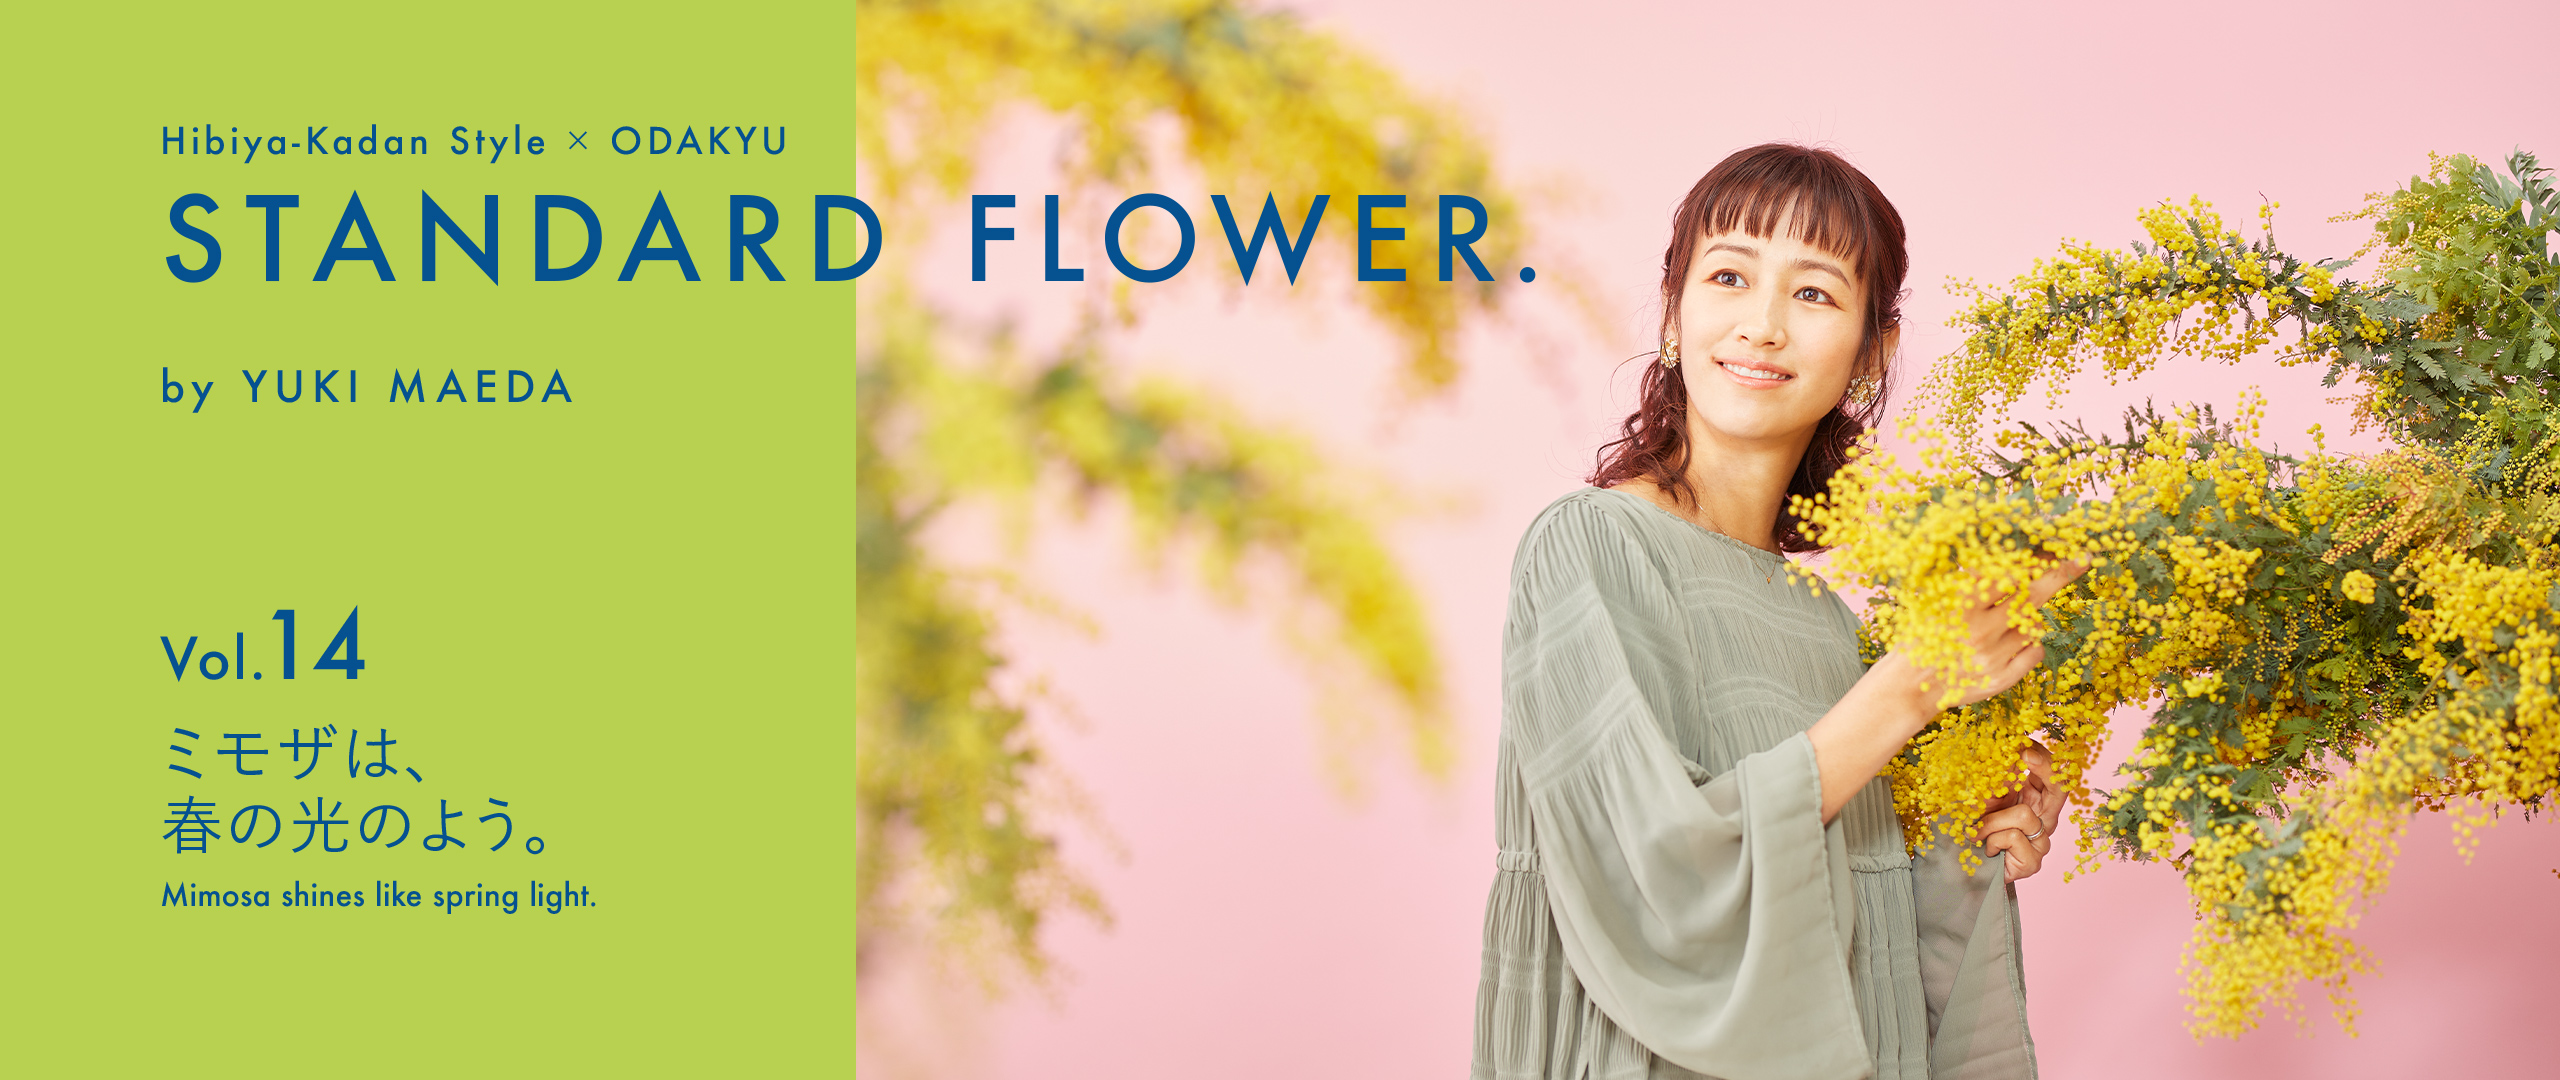 Standard Flower Vol 14 ミモザは 春の光のよう 小田急ポイントカード Opカード